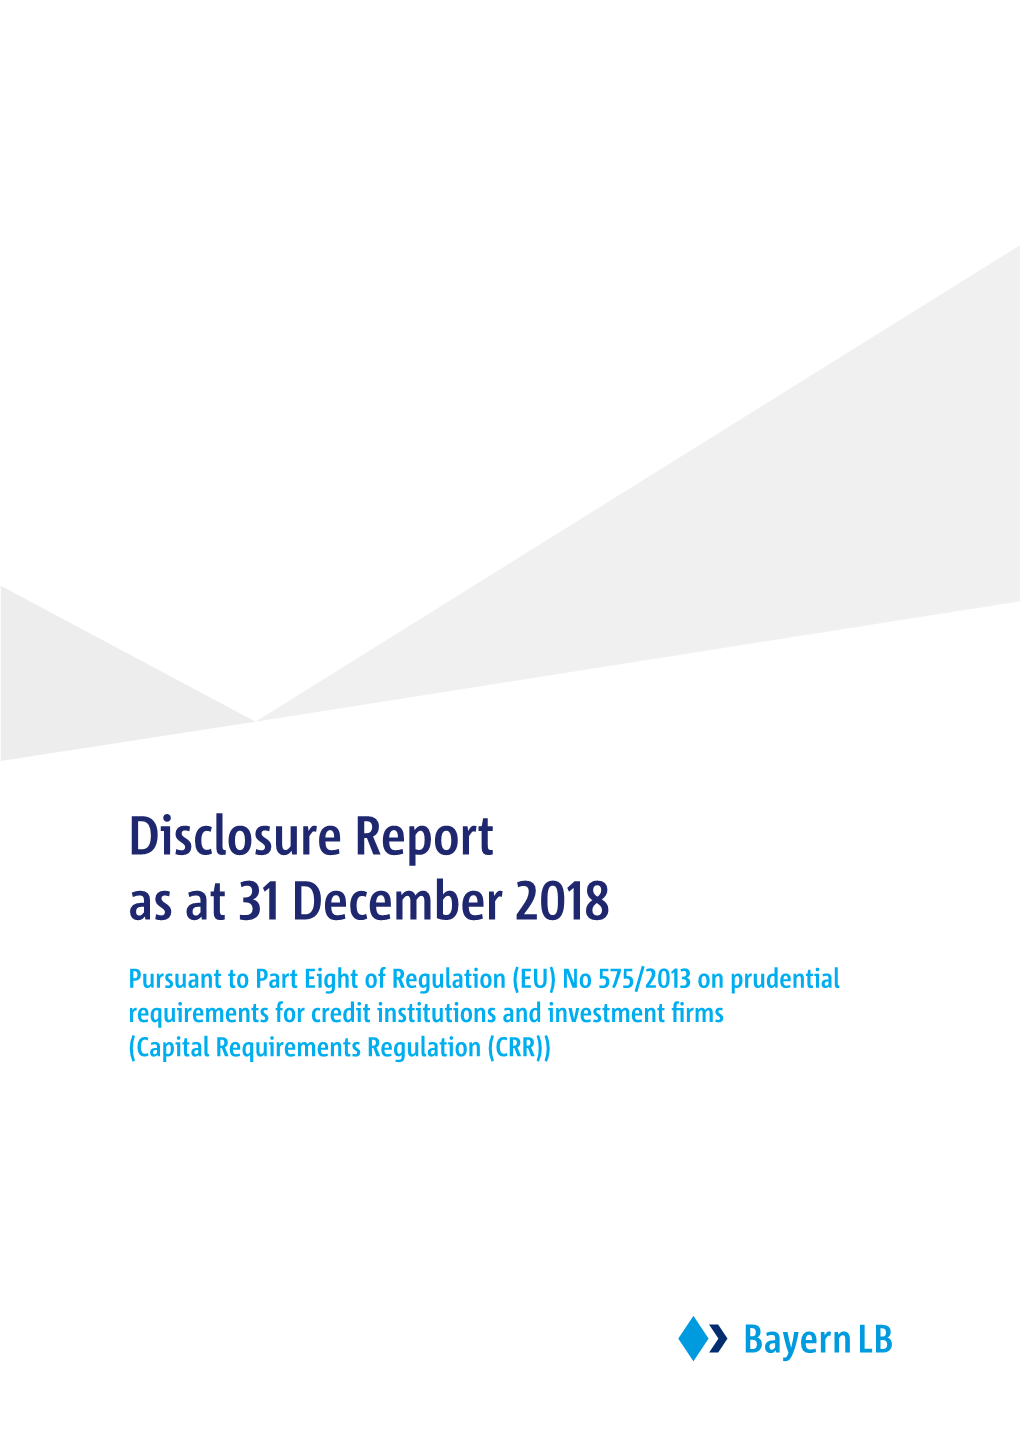 Disclosure Report As at 31 December 2018